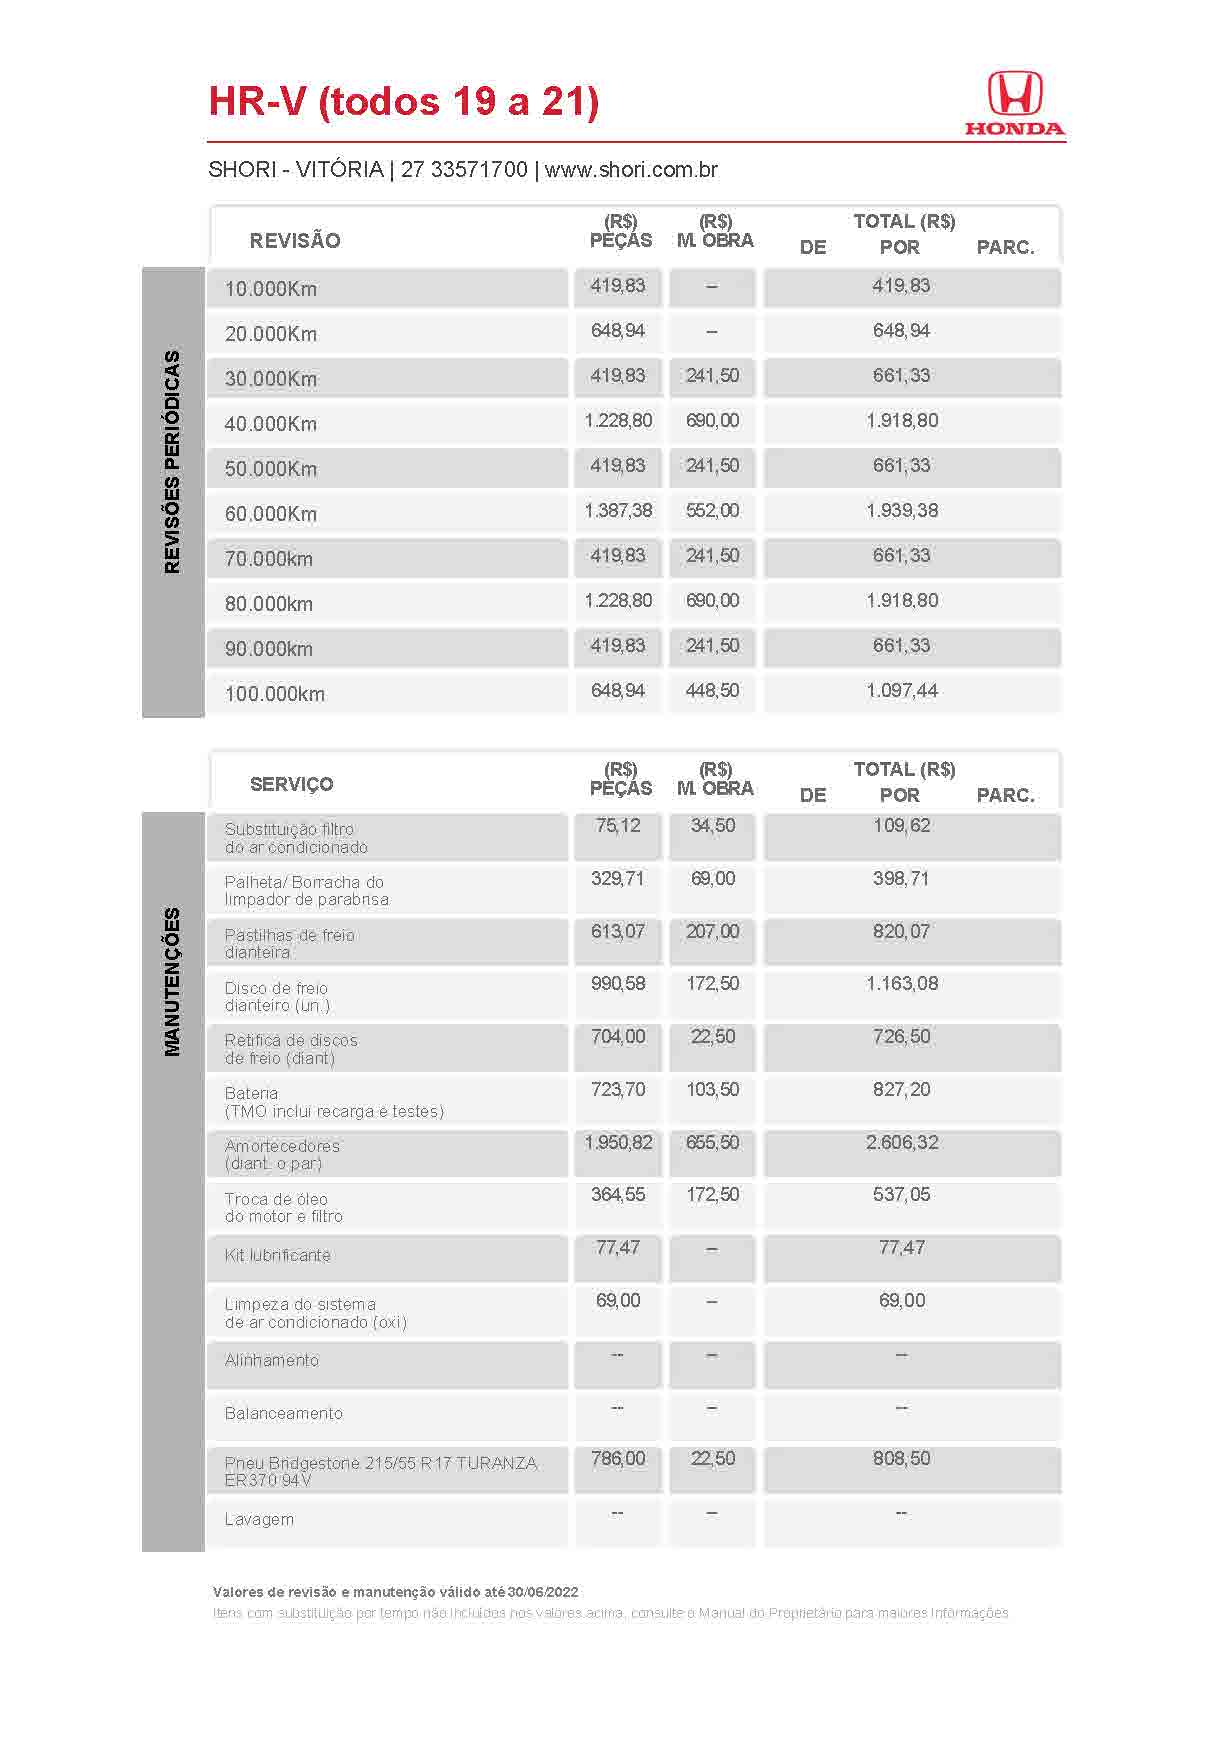 Honda Shori Tabela de Revisão hr v todos 19 a 21 2022 06 30